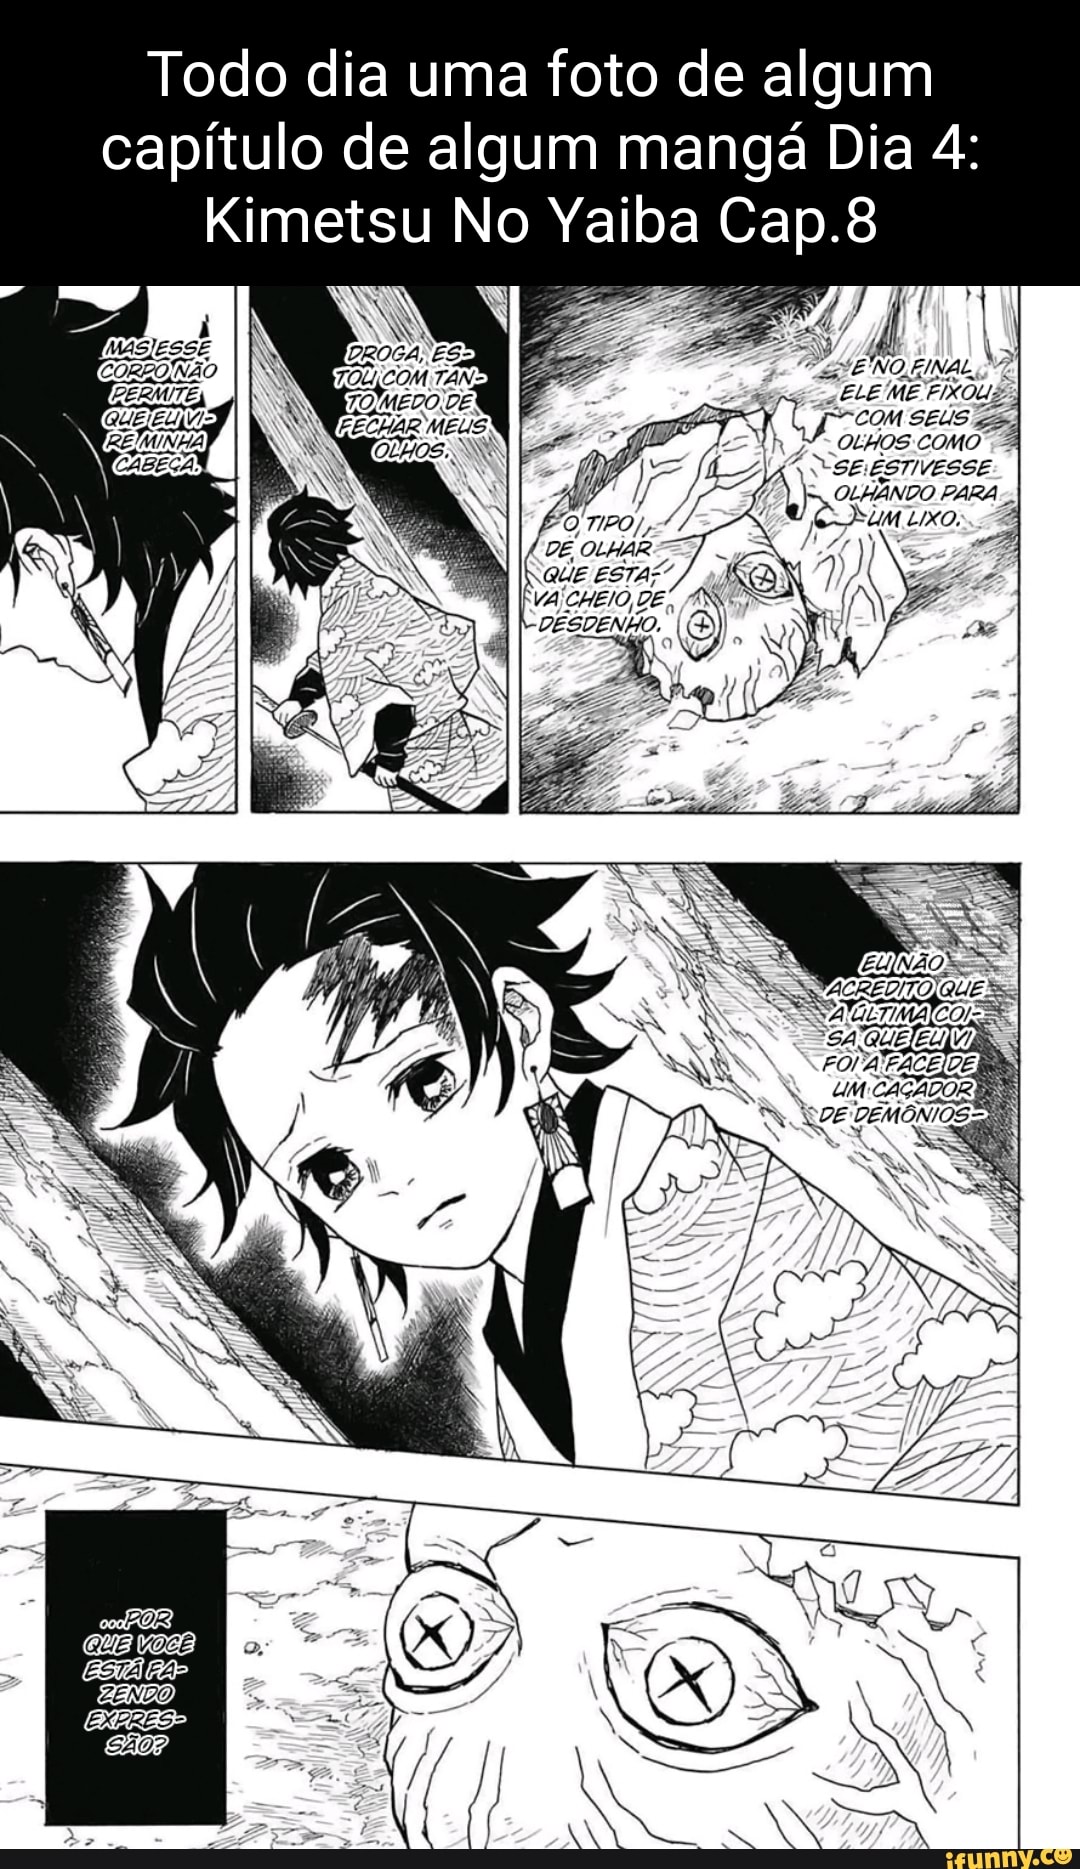 Kimetsu no Yaiba: Demon Slayer, ¿cómo ver ONLINE el capítulo 8 de